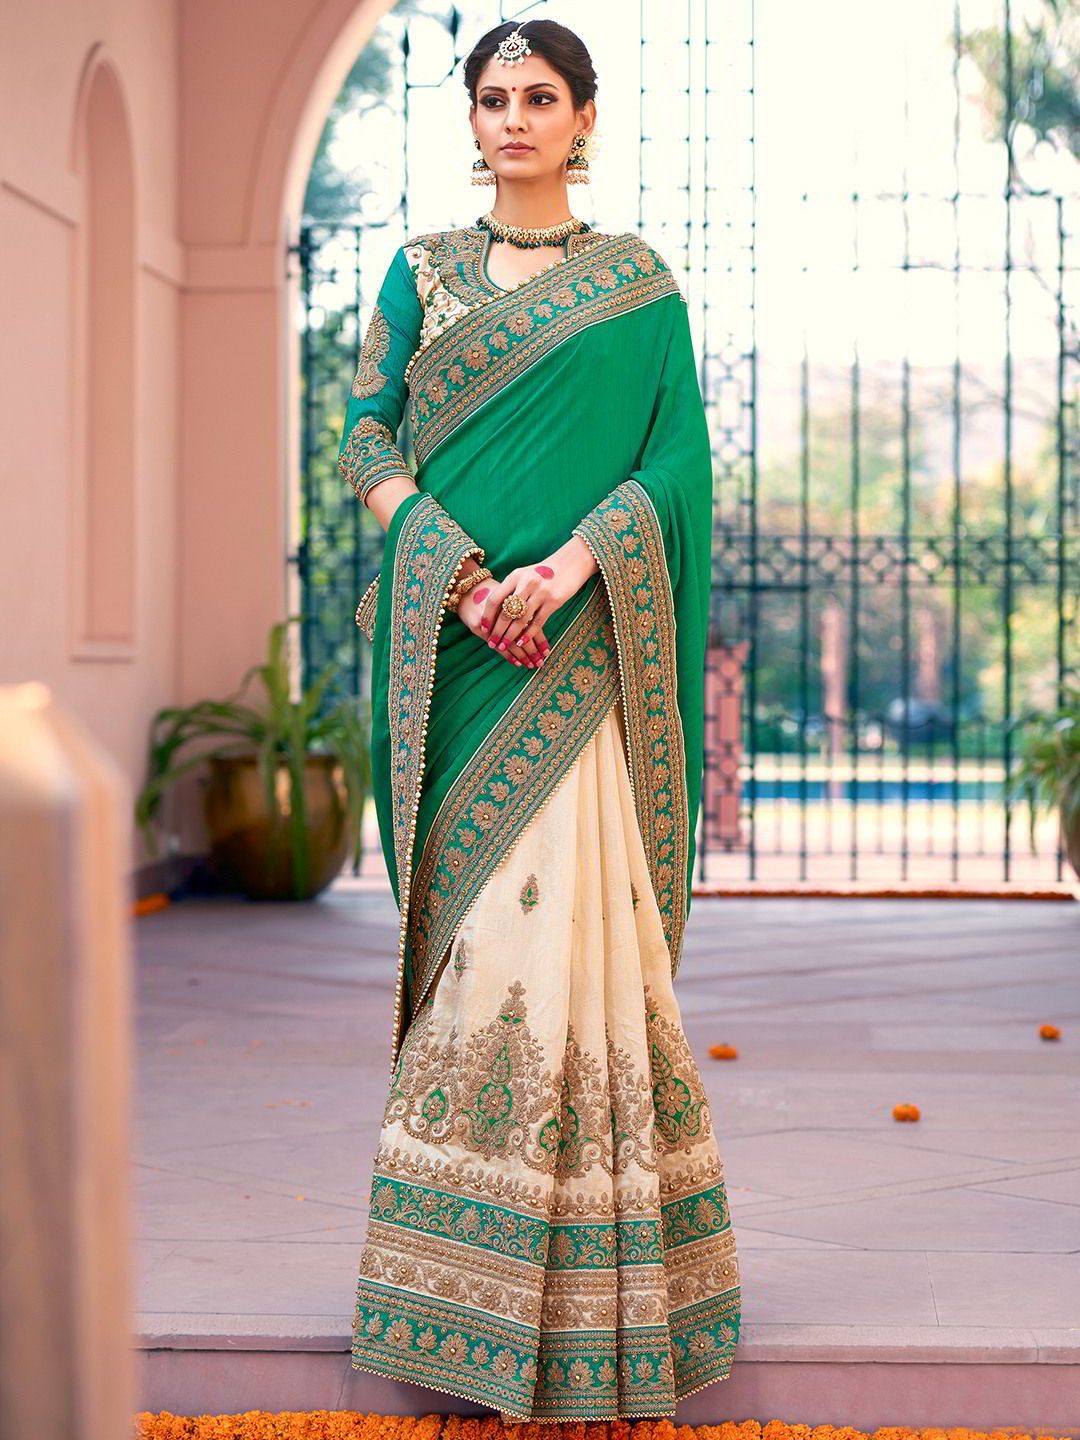 Сари – женственная одежда индийских женщин.